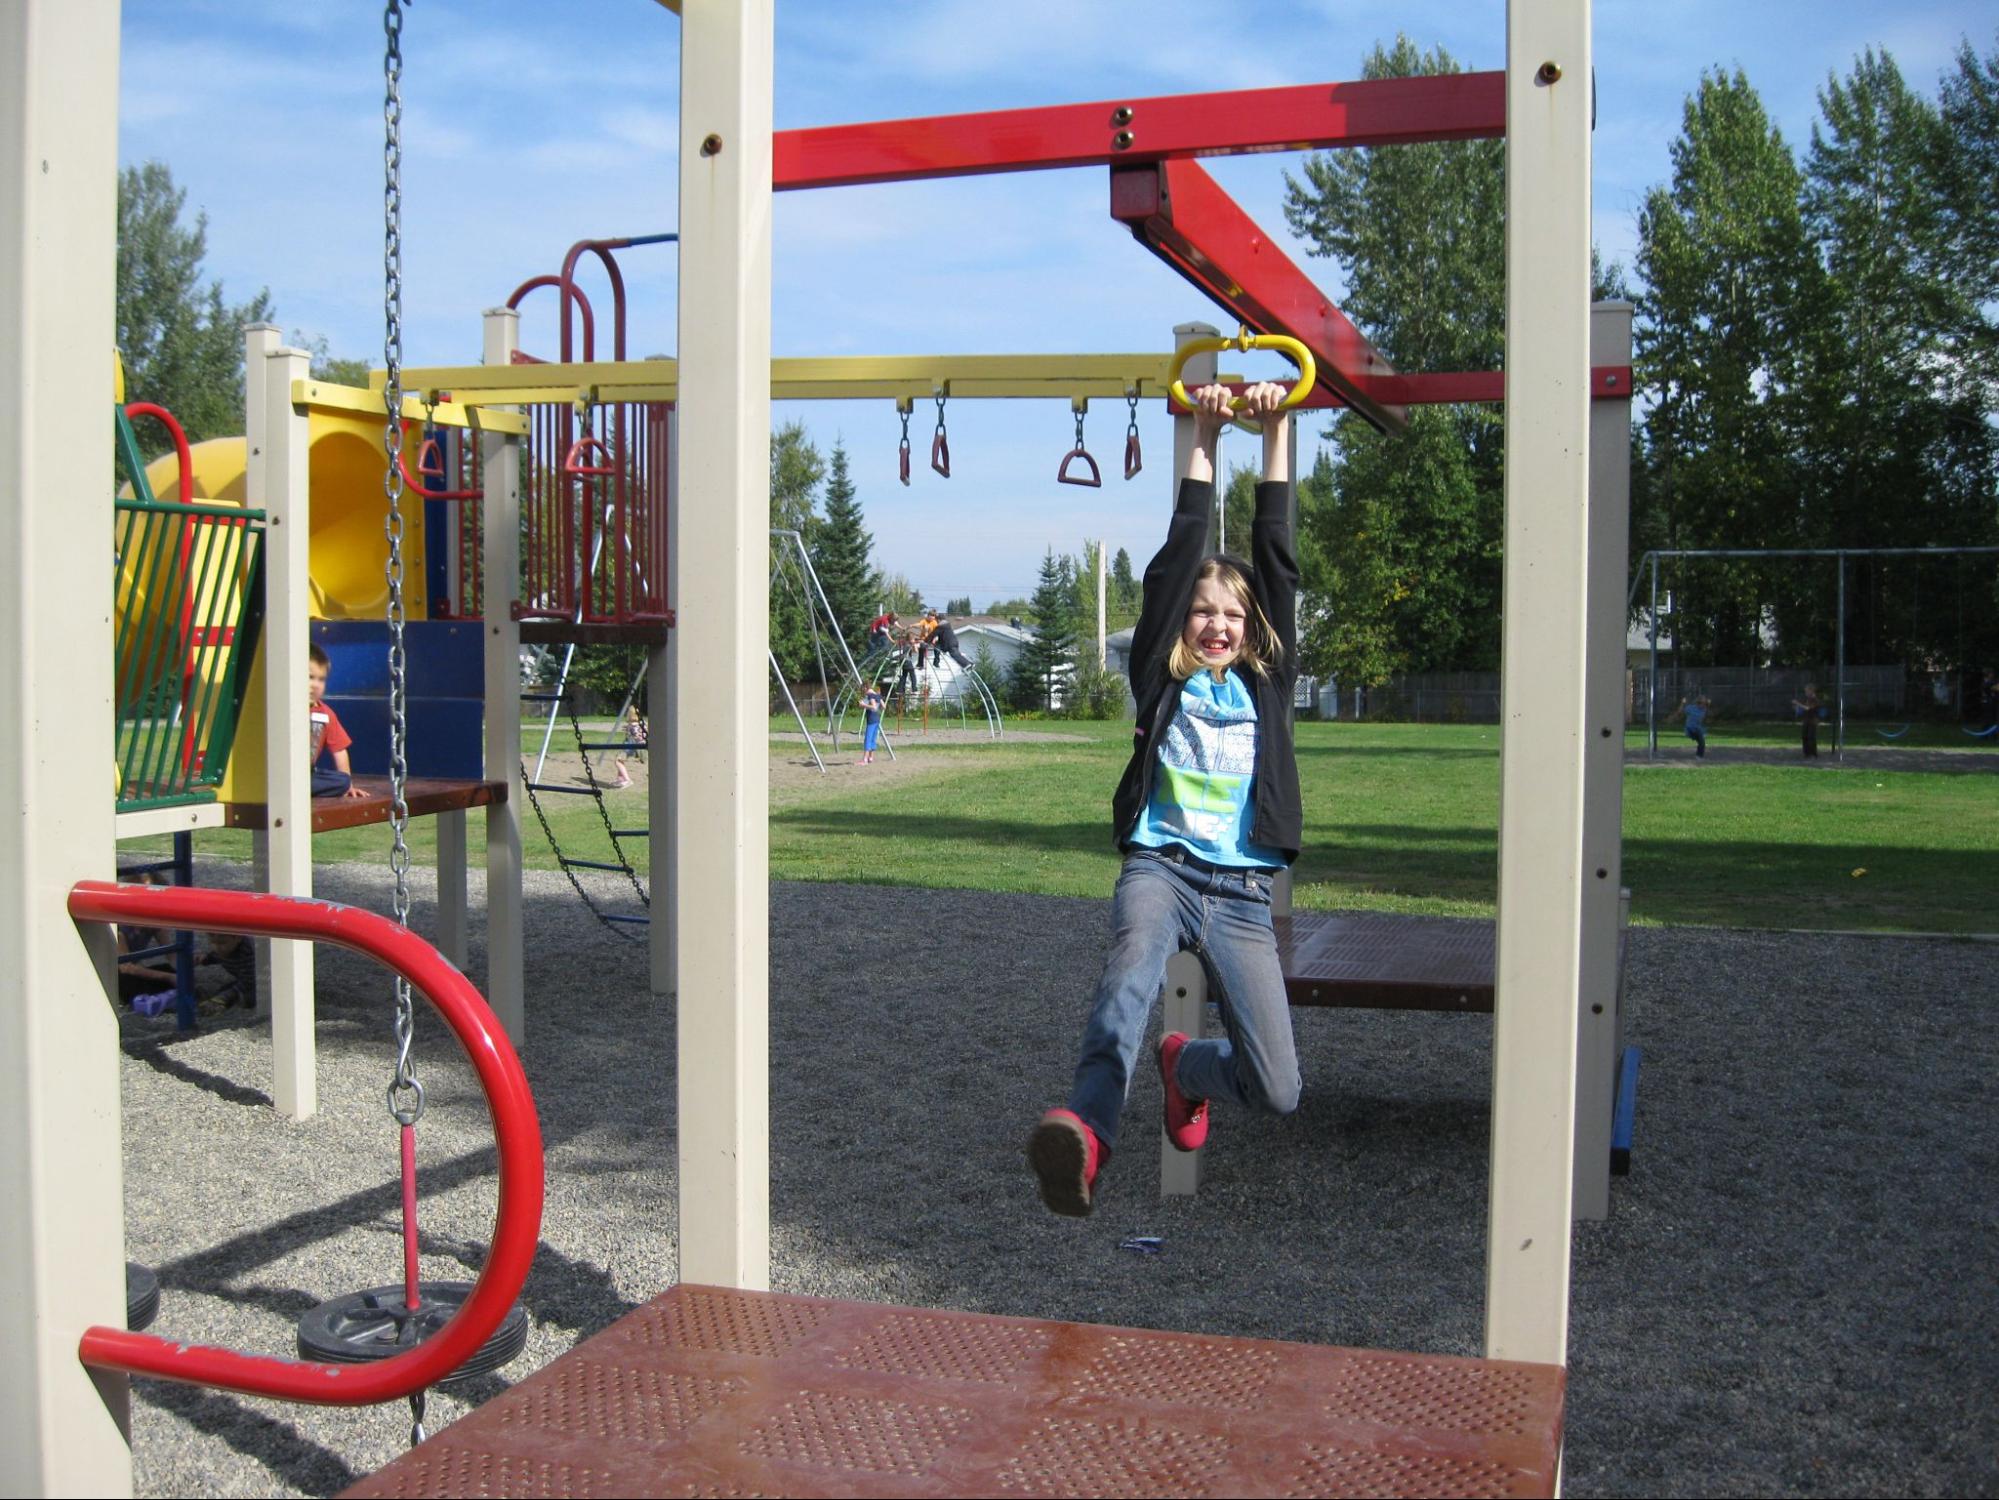 Playground Ziplines: Safe, or a Playground Safety Hazard?